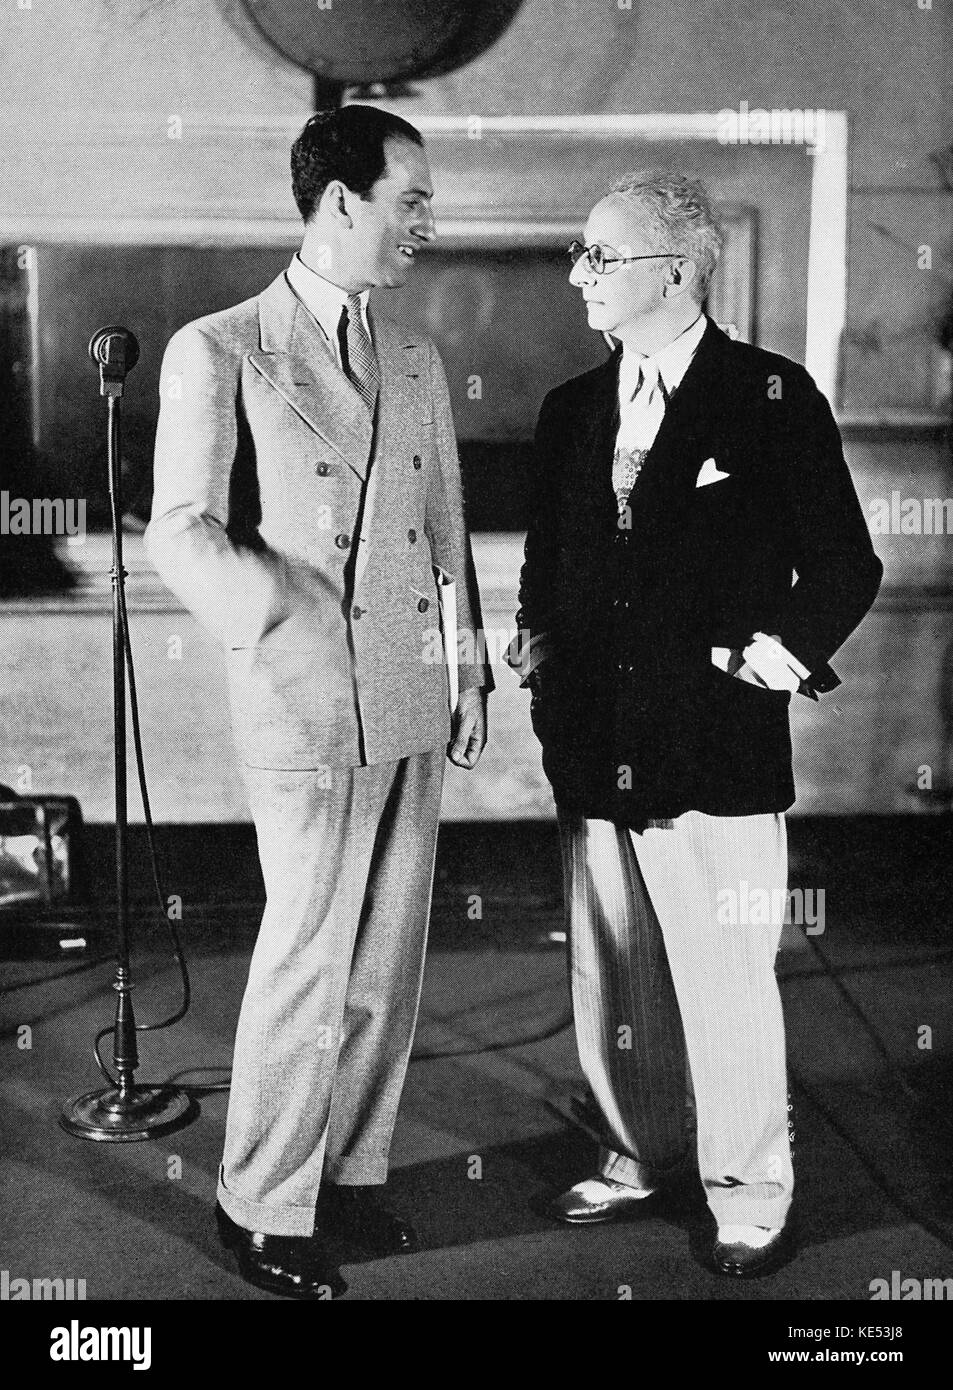 George Gershwin y Jerome Kern (compositor estadounidense el 27 de enero de 1885 - 11 de noviembre de 1945). Pianista y compositor norteamericano, el 26 de septiembre de 1898 - 11 de julio de 1937 Foto de stock